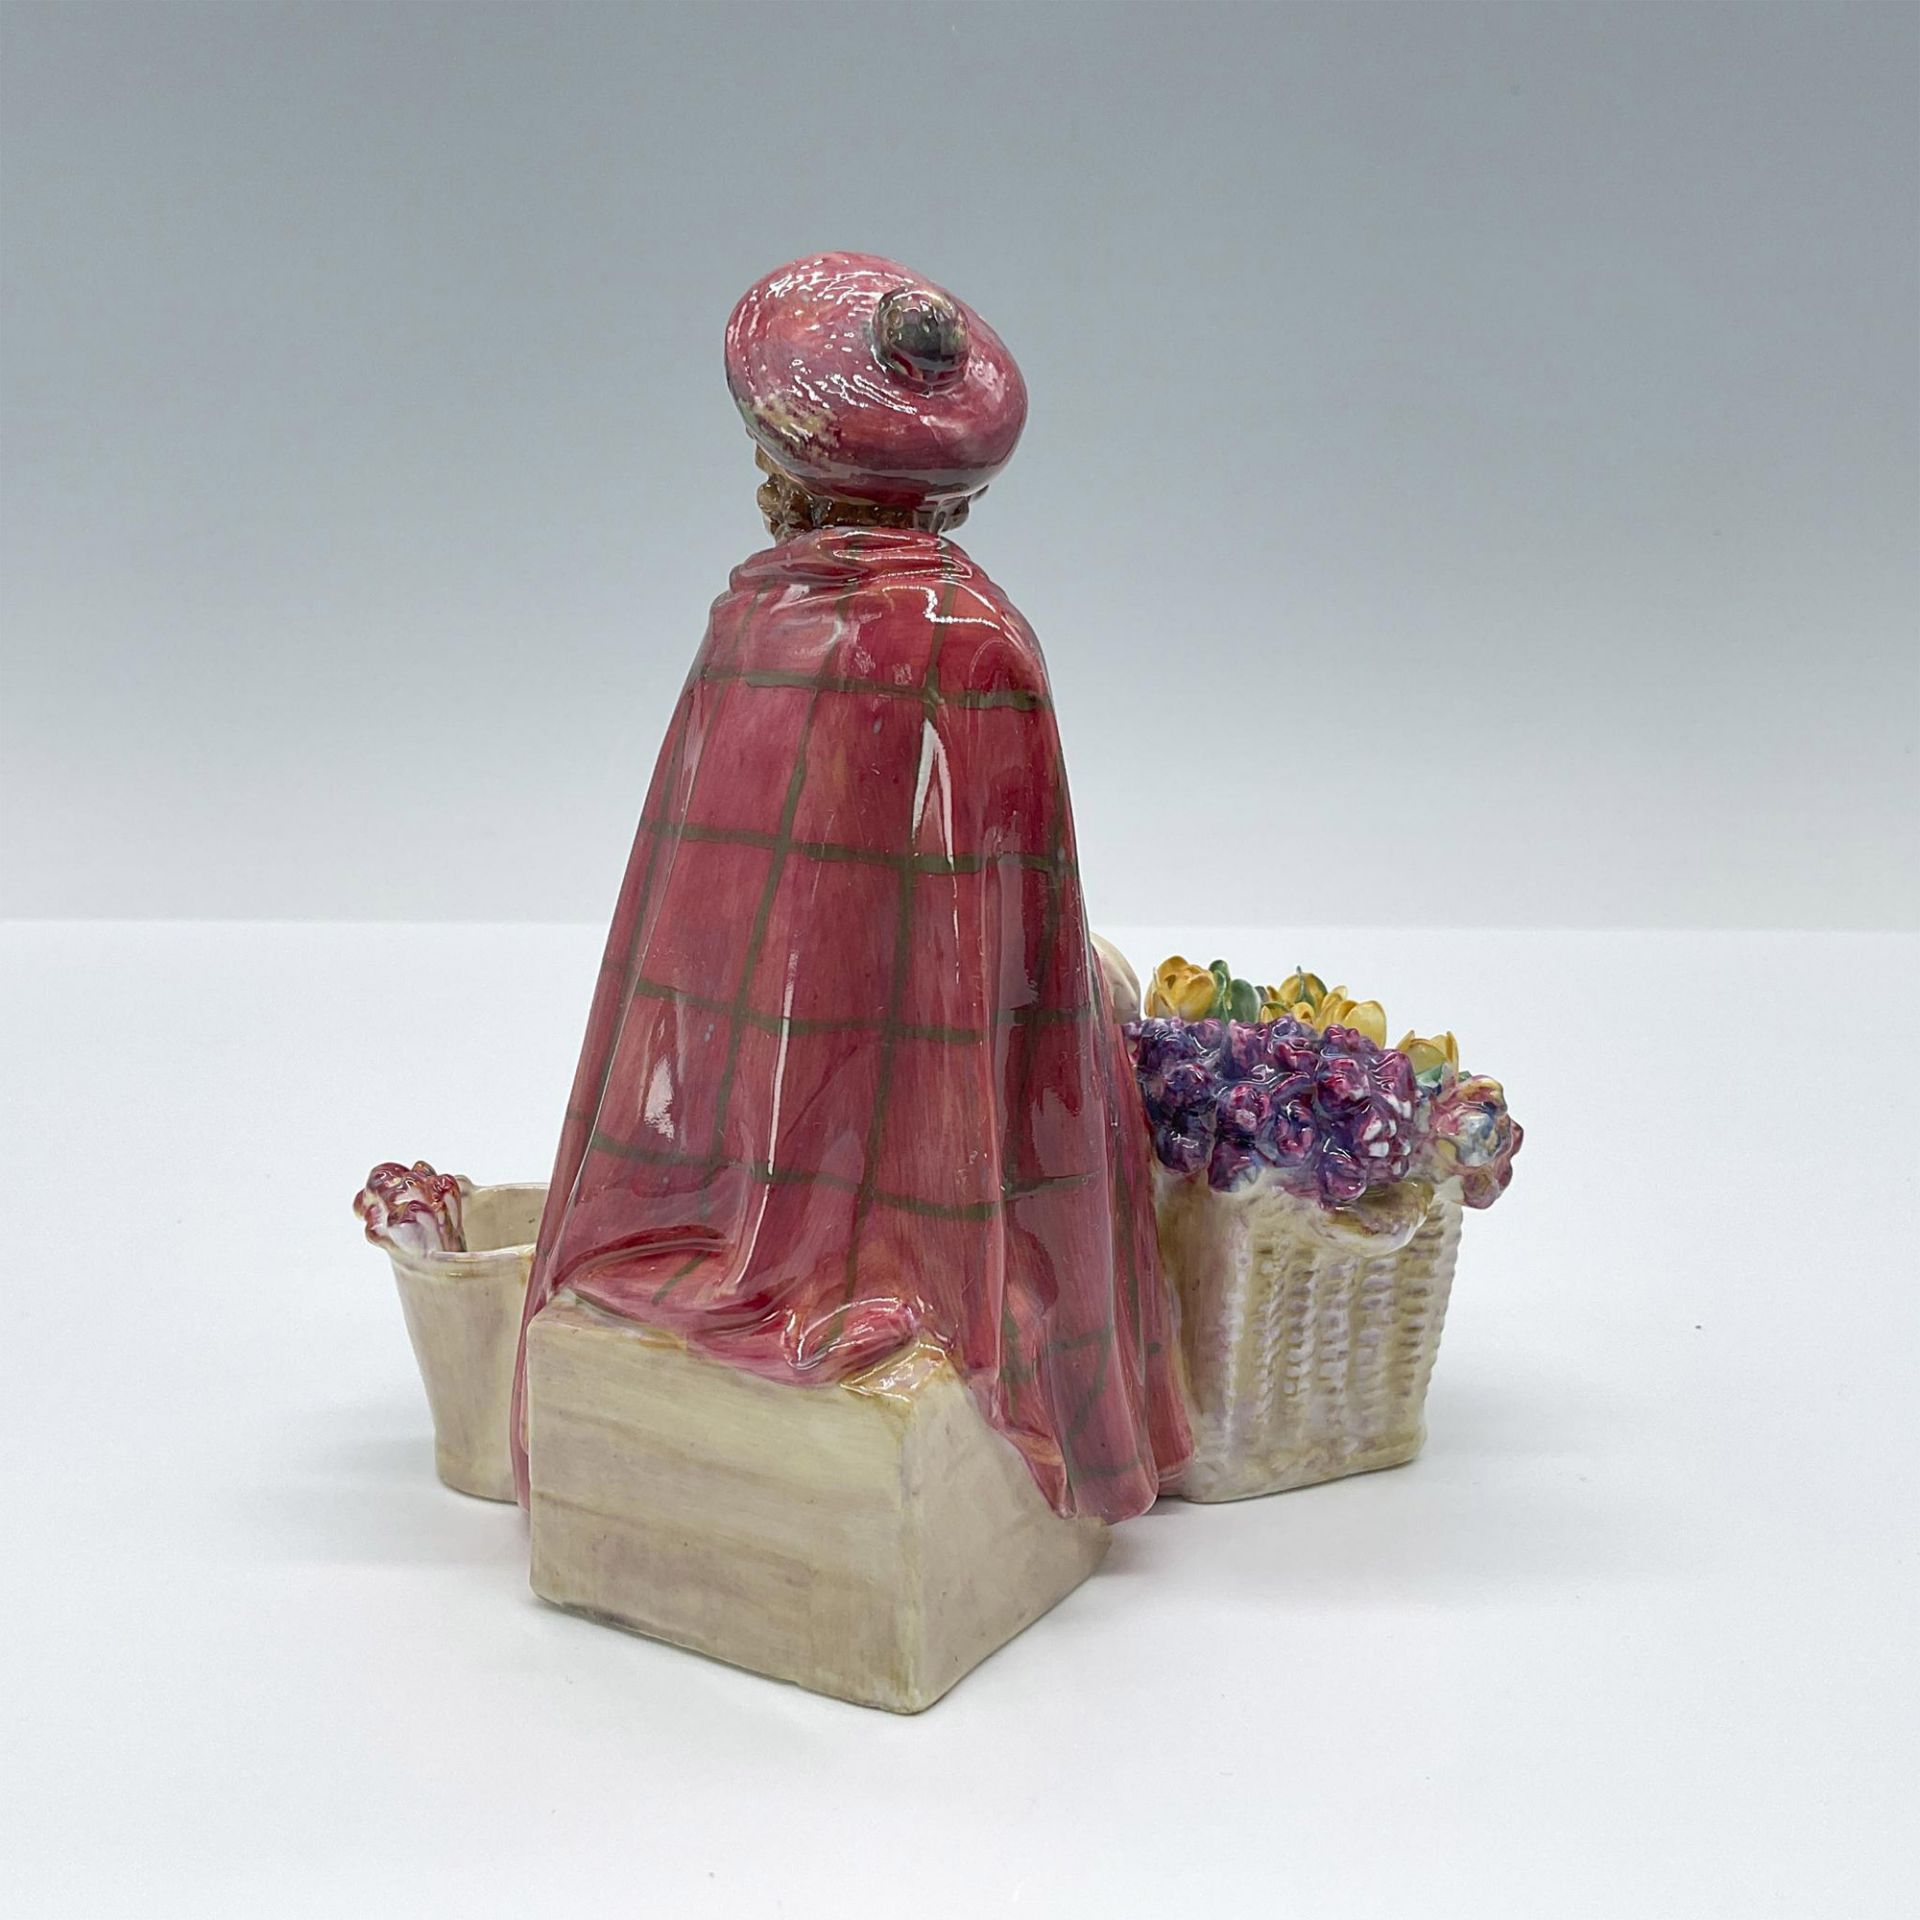 Bonnie Lassie - HN1626 - Royal Doulton Figurine - Image 2 of 3